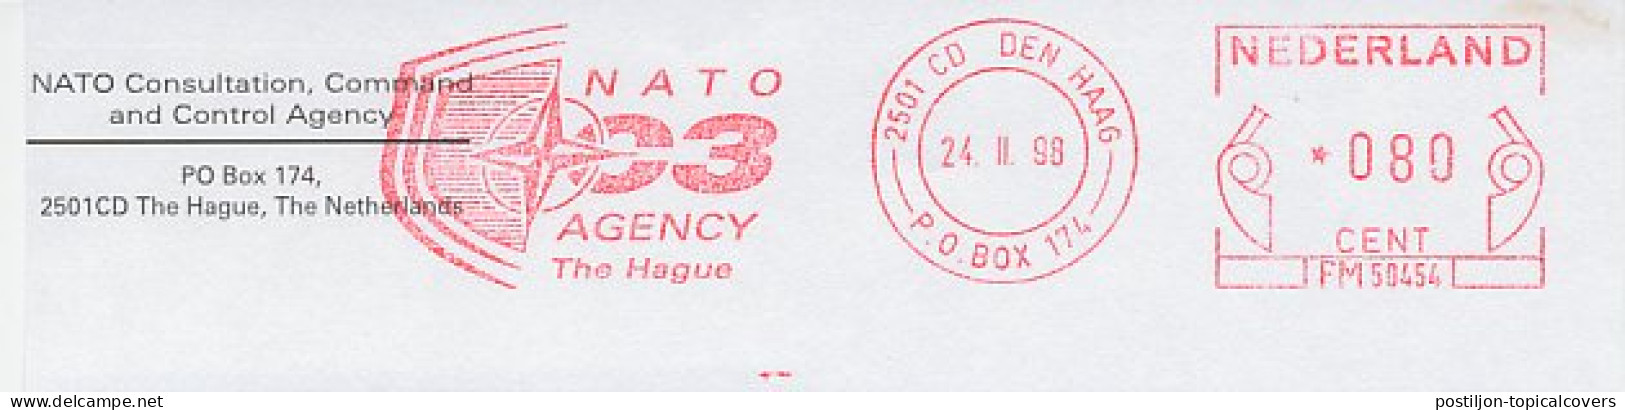 Meter Top Cut Netherlands 1998 NATO C3 Agency - OTAN